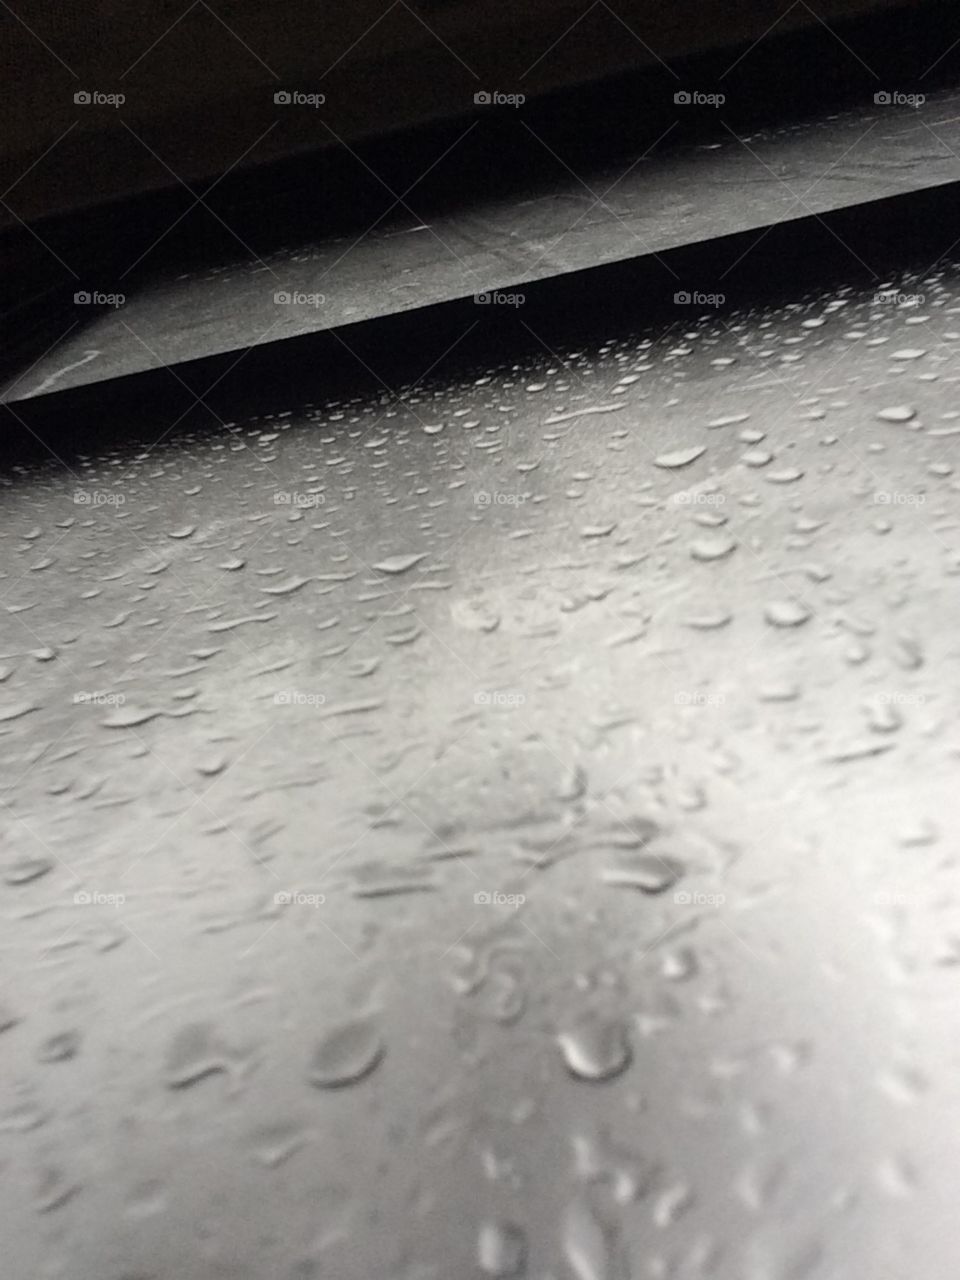 Rain drops on window